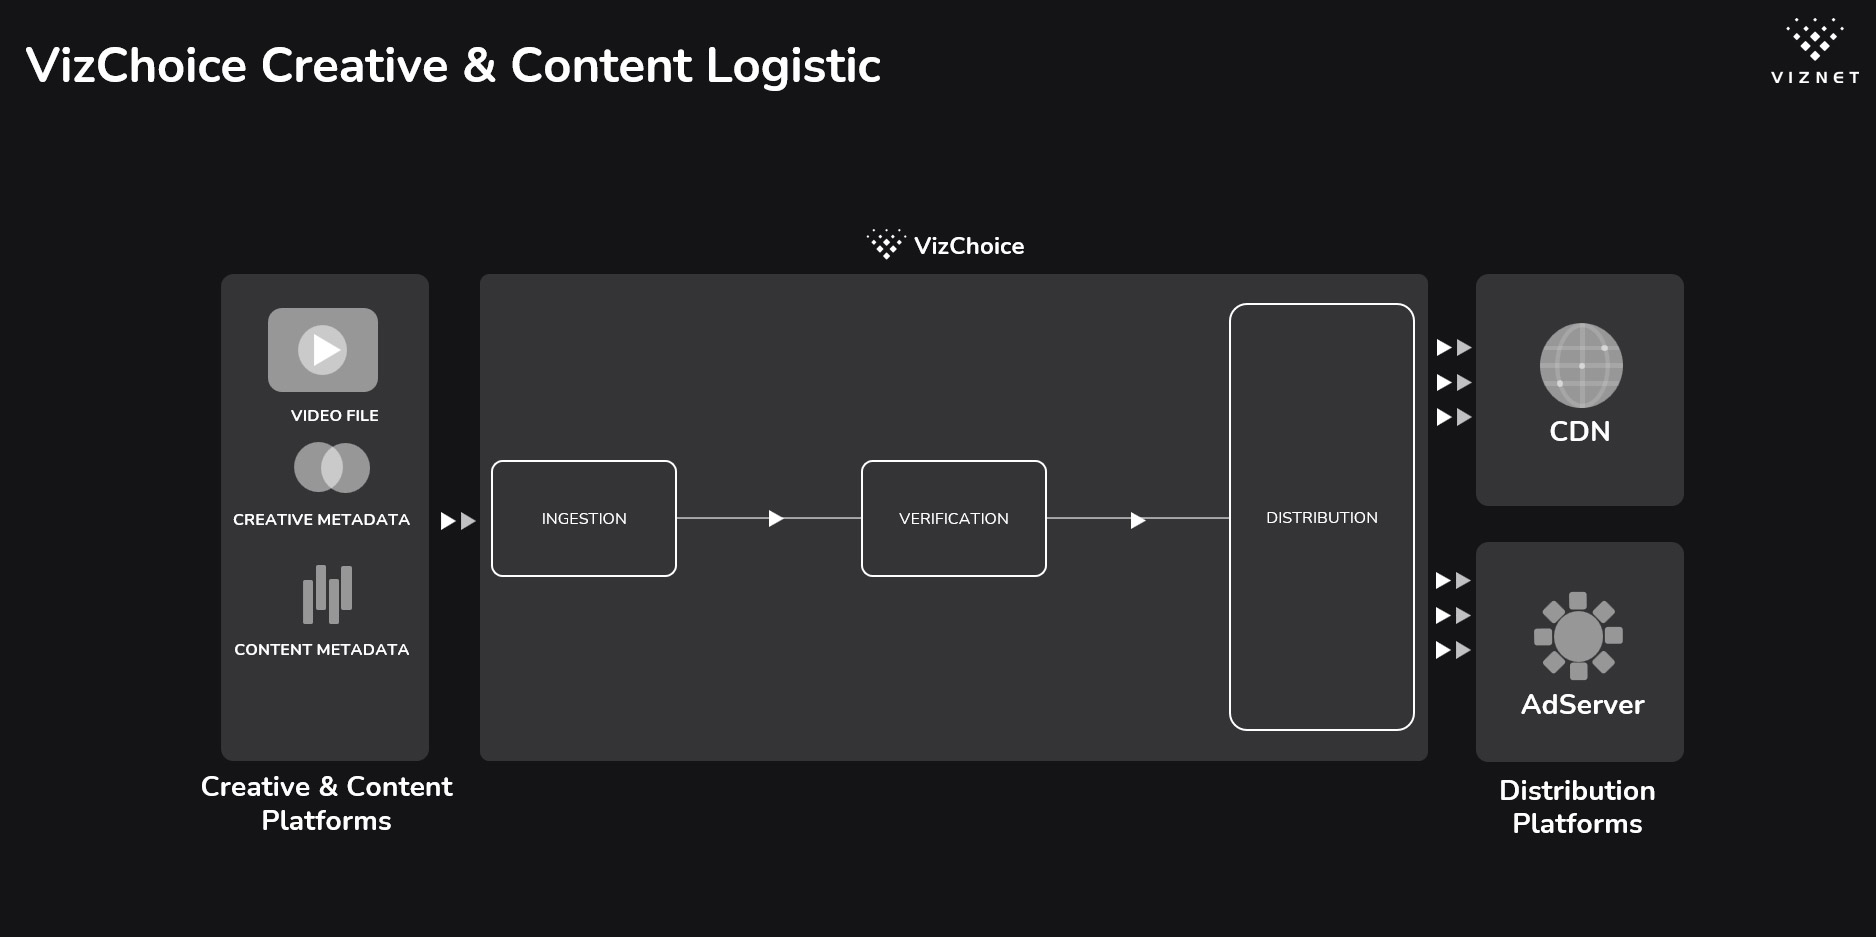 VizChoice - Creative & Content Logistic